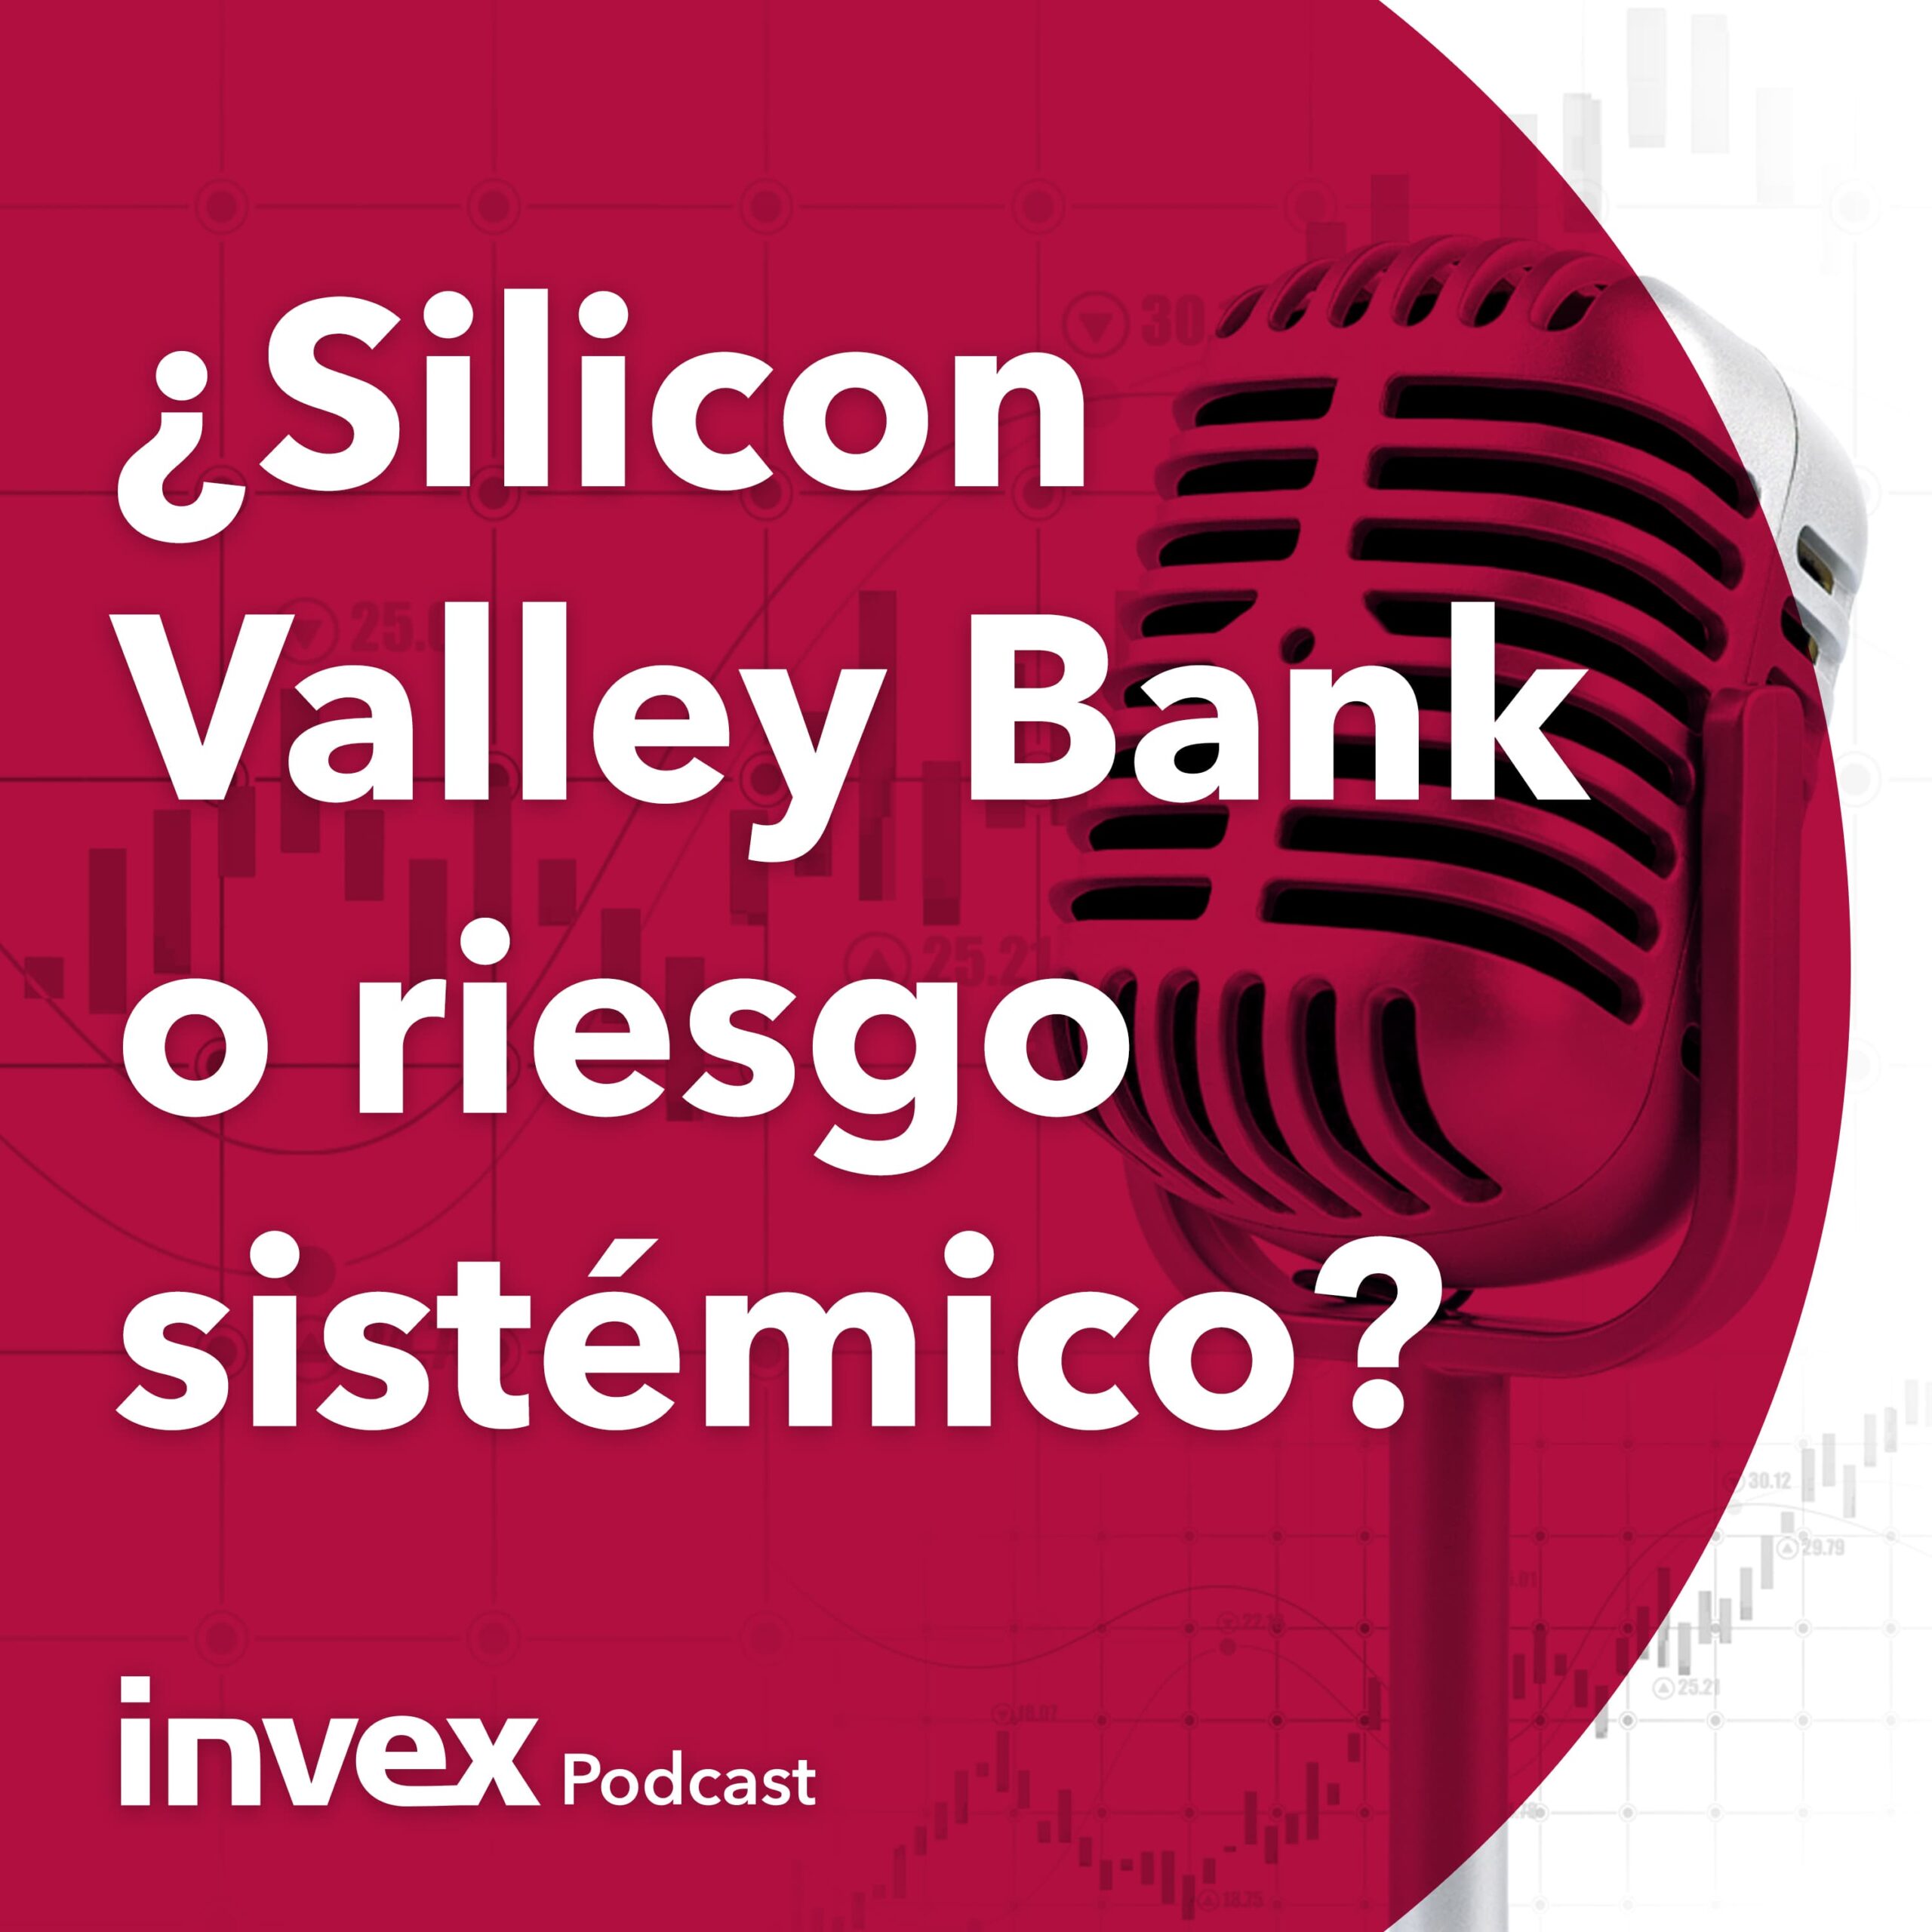 ¿Silicon Valley Bank o riesgo sistémico?